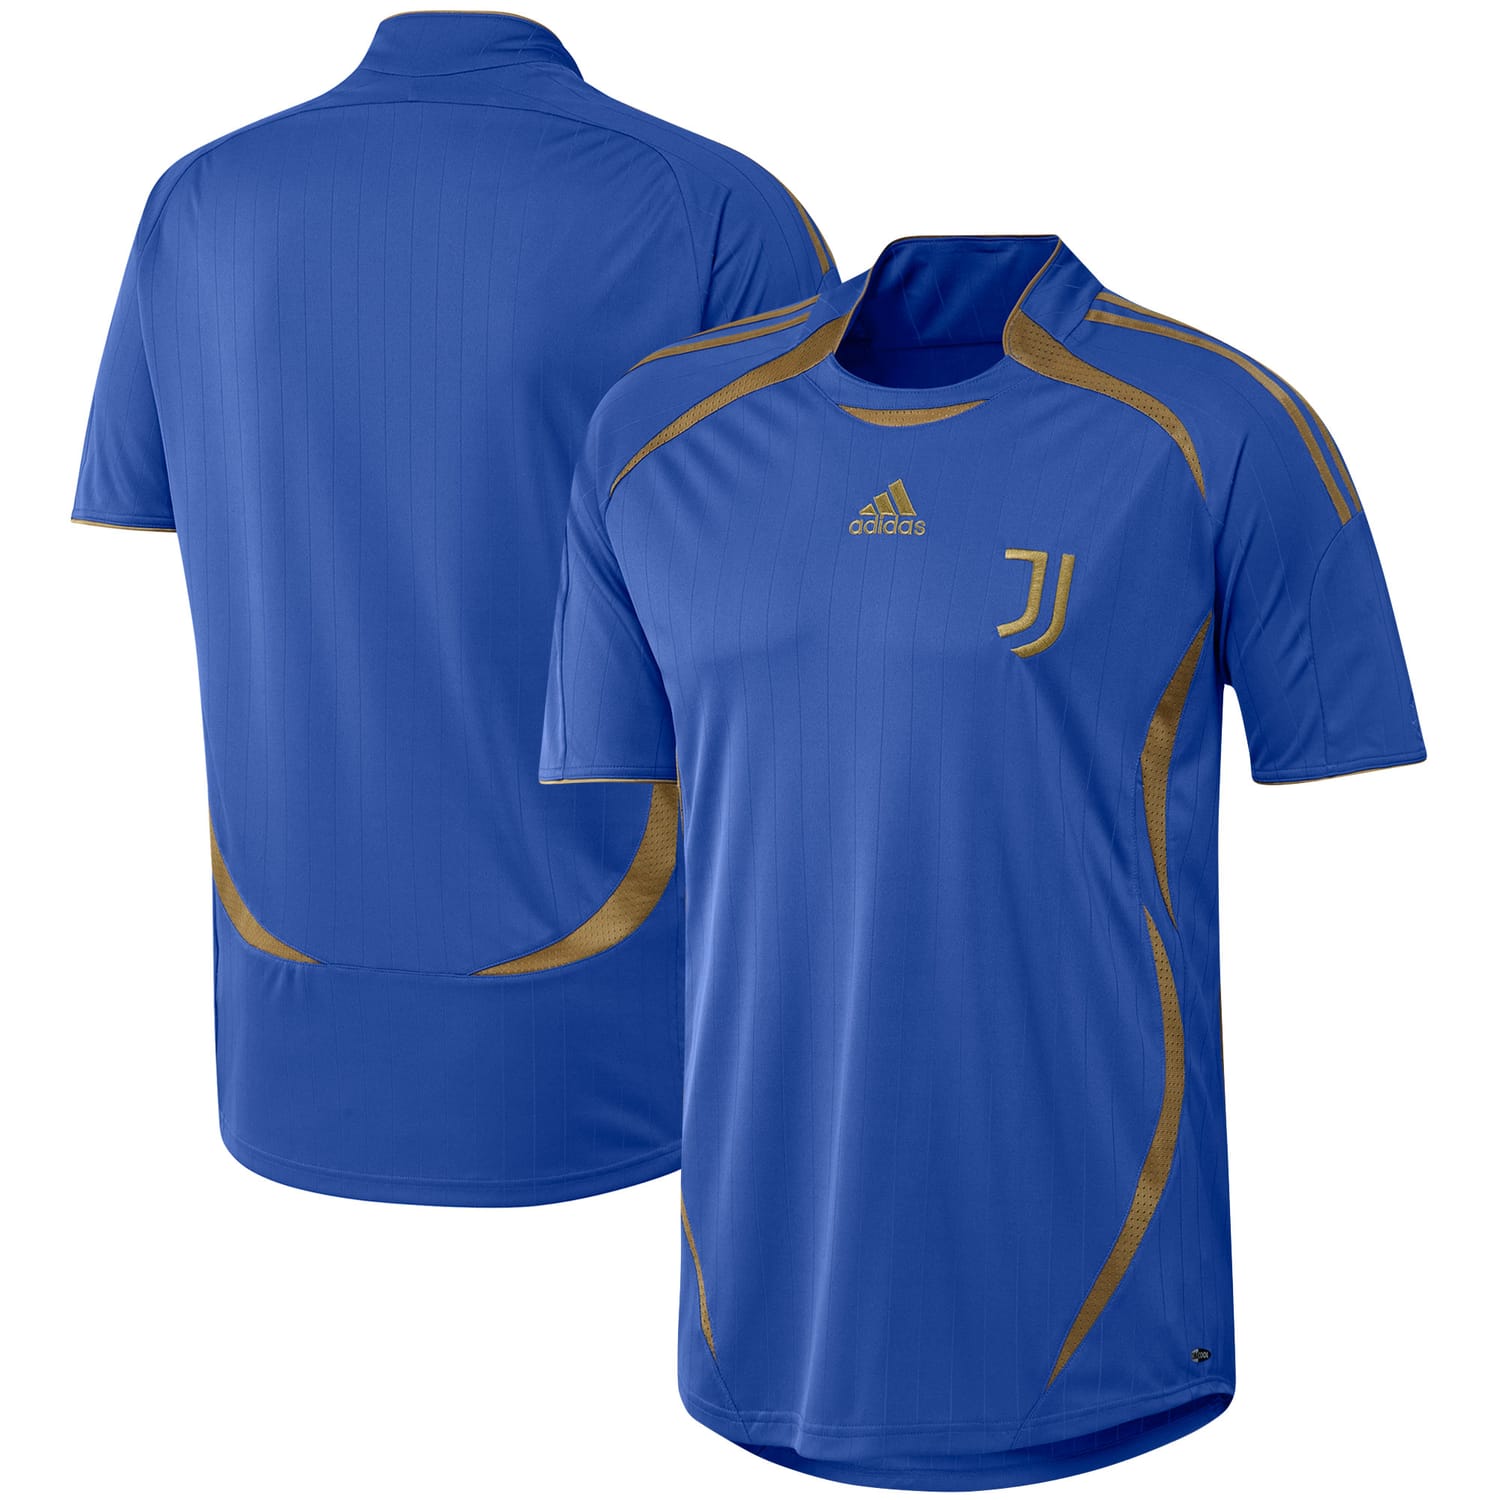 Serie A Juventus Jersey Shirt Blue for Men